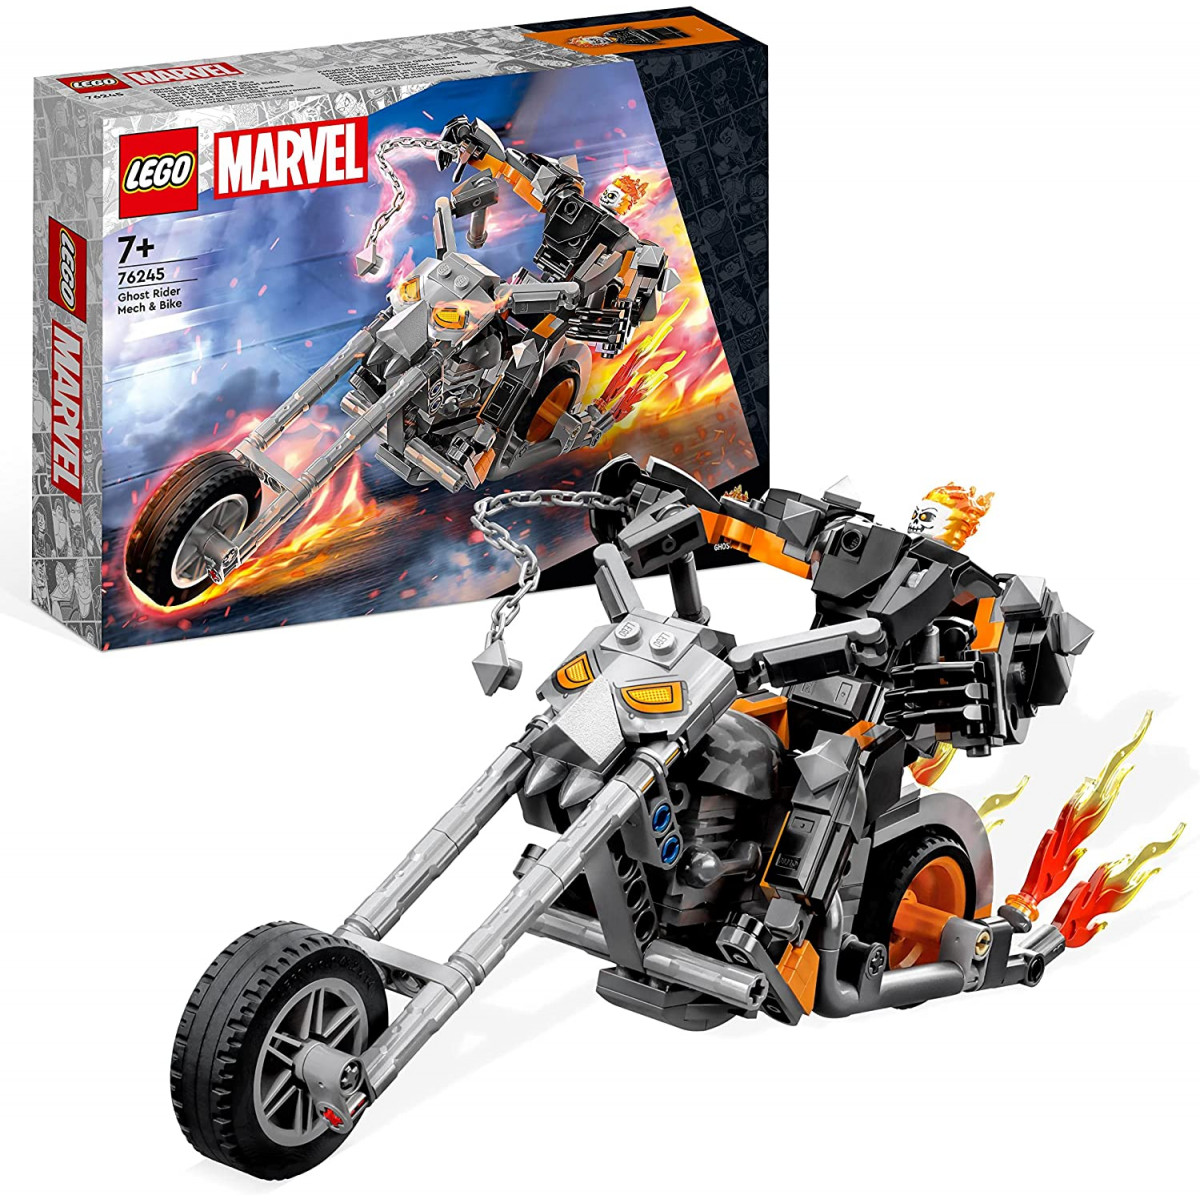 Lego 76245 - Avengers Marvel Ghost Rider Mech & Bike Toy Set